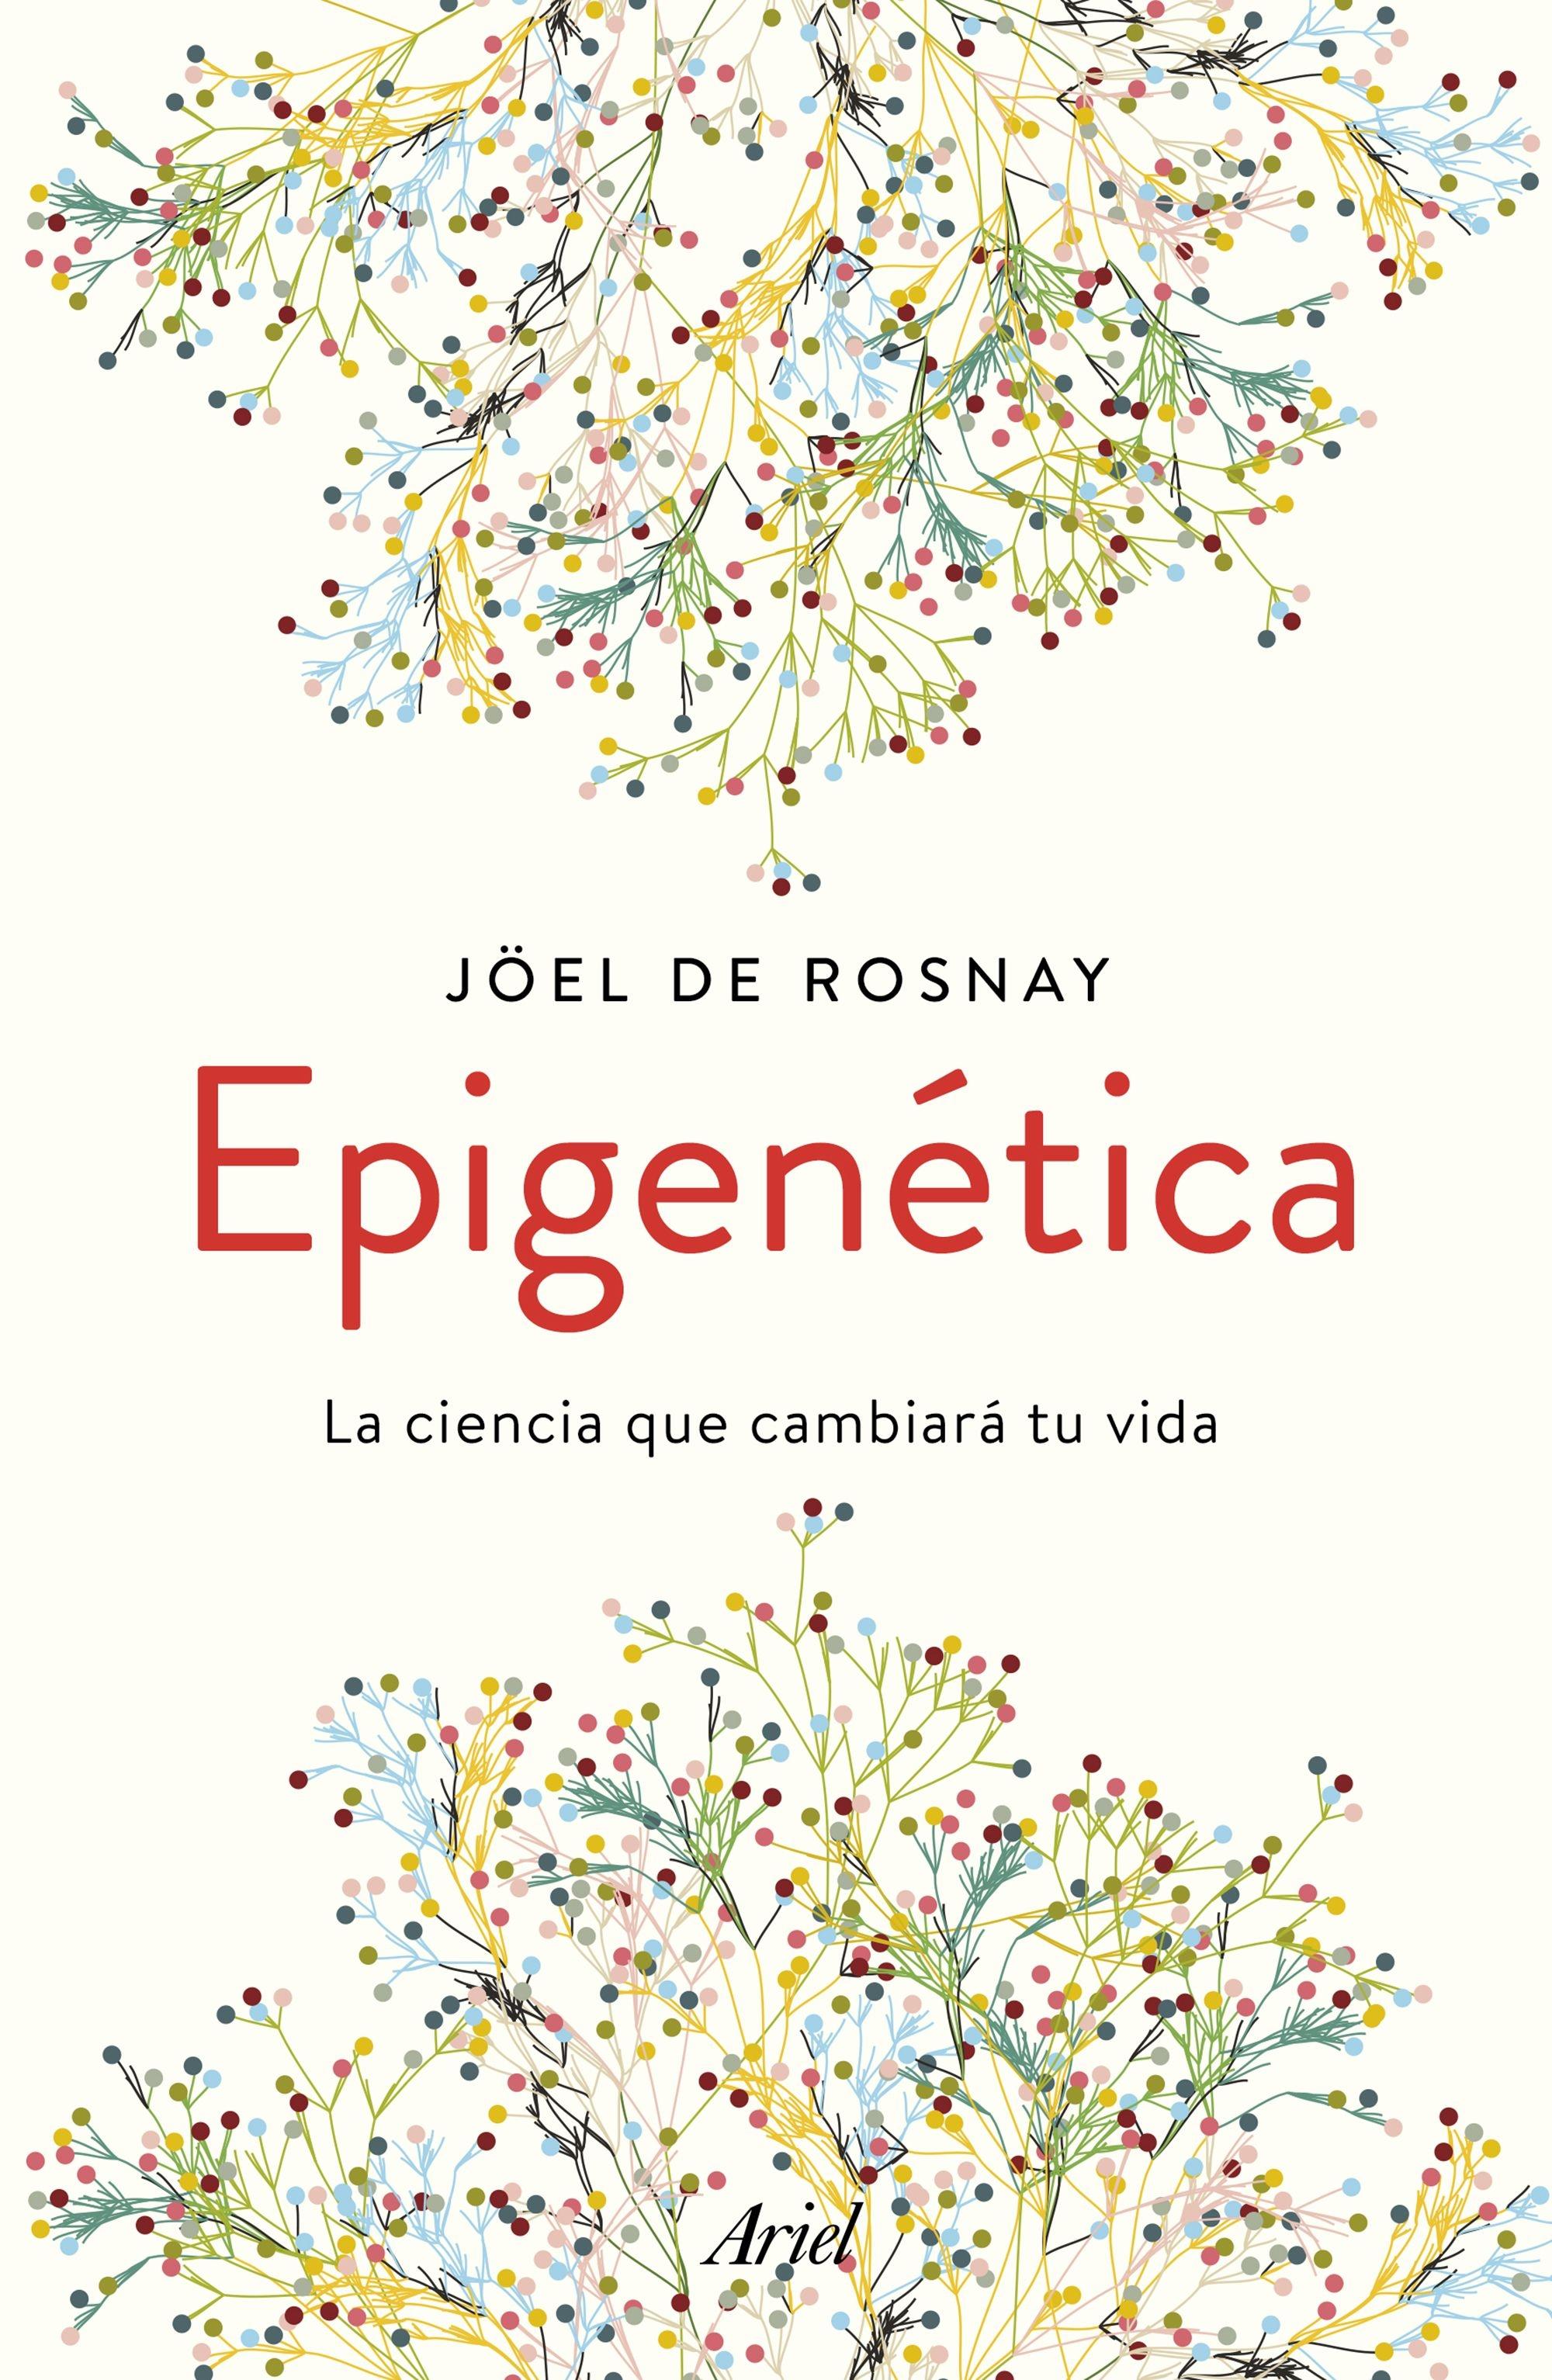 Epigenética "La ciencia que cambiará tu vida"